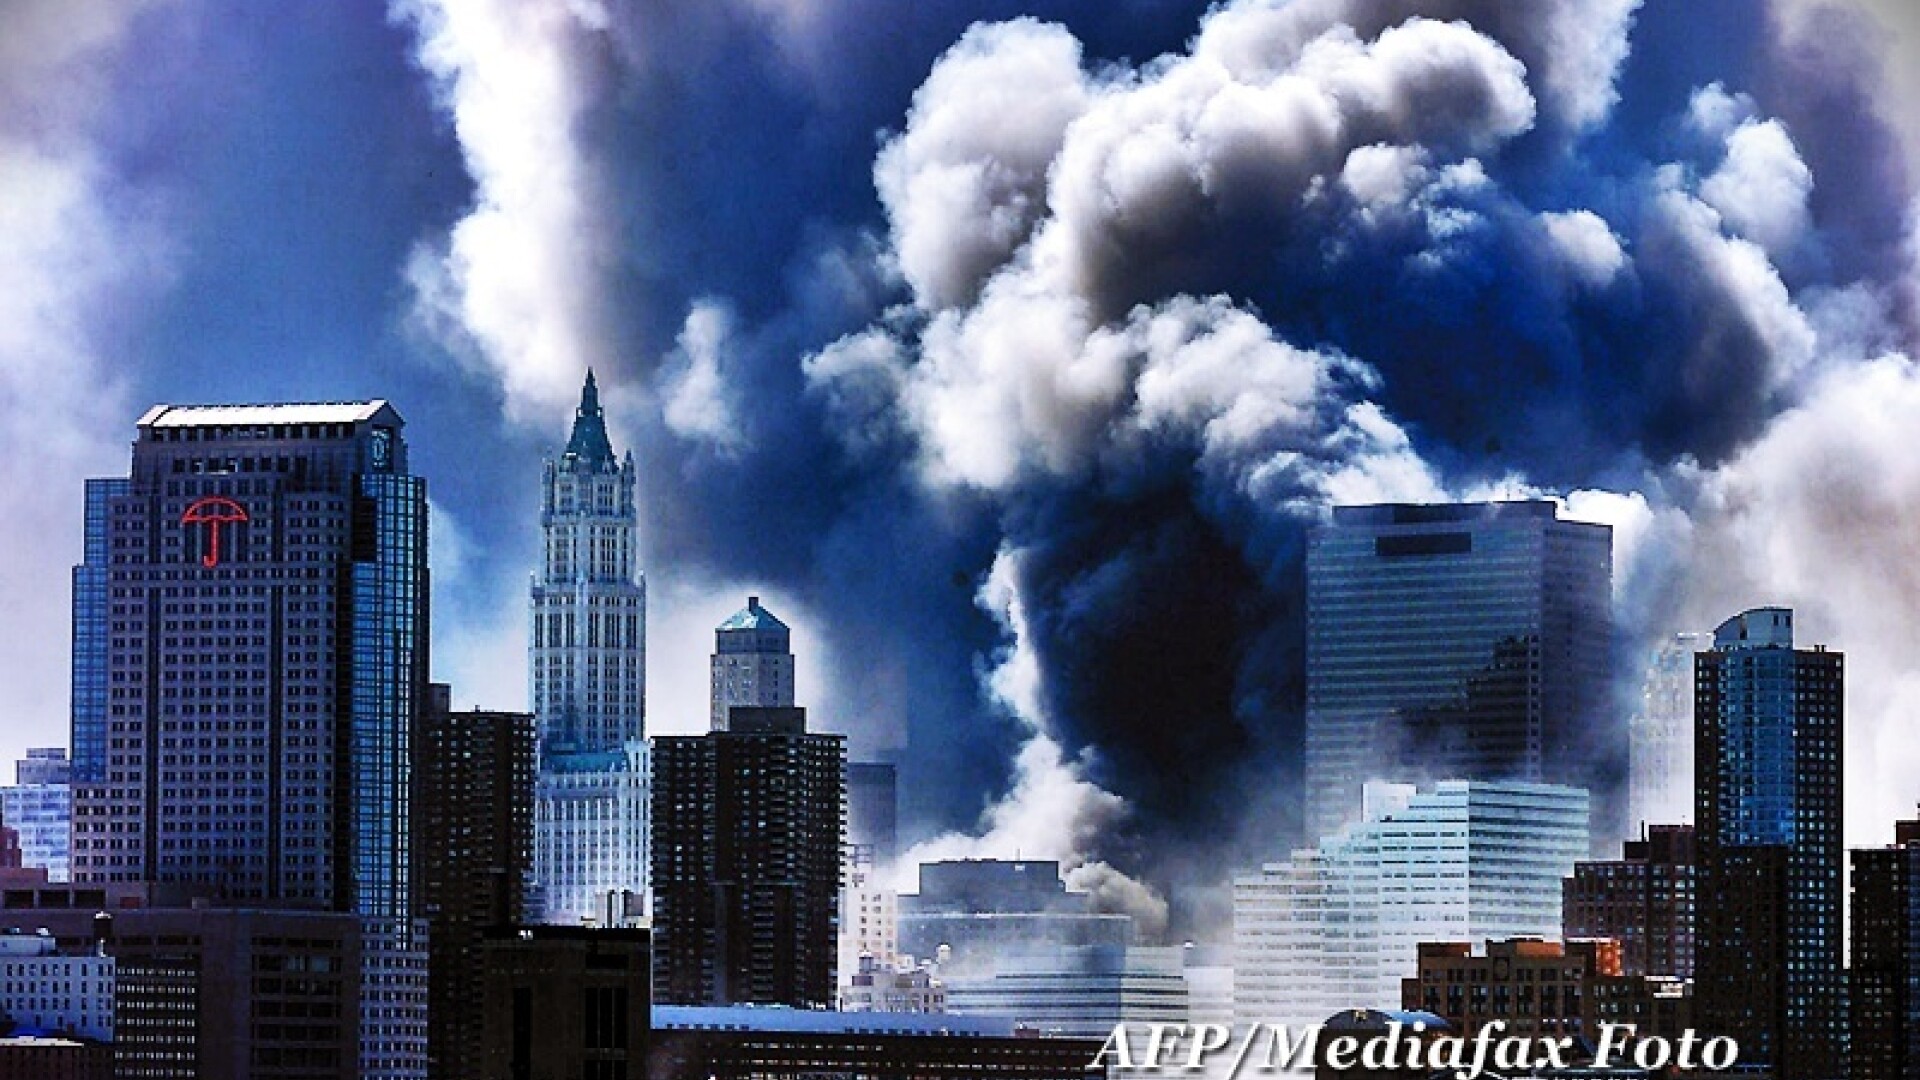 Atentatele de la 11 septembrie 2001 - 2